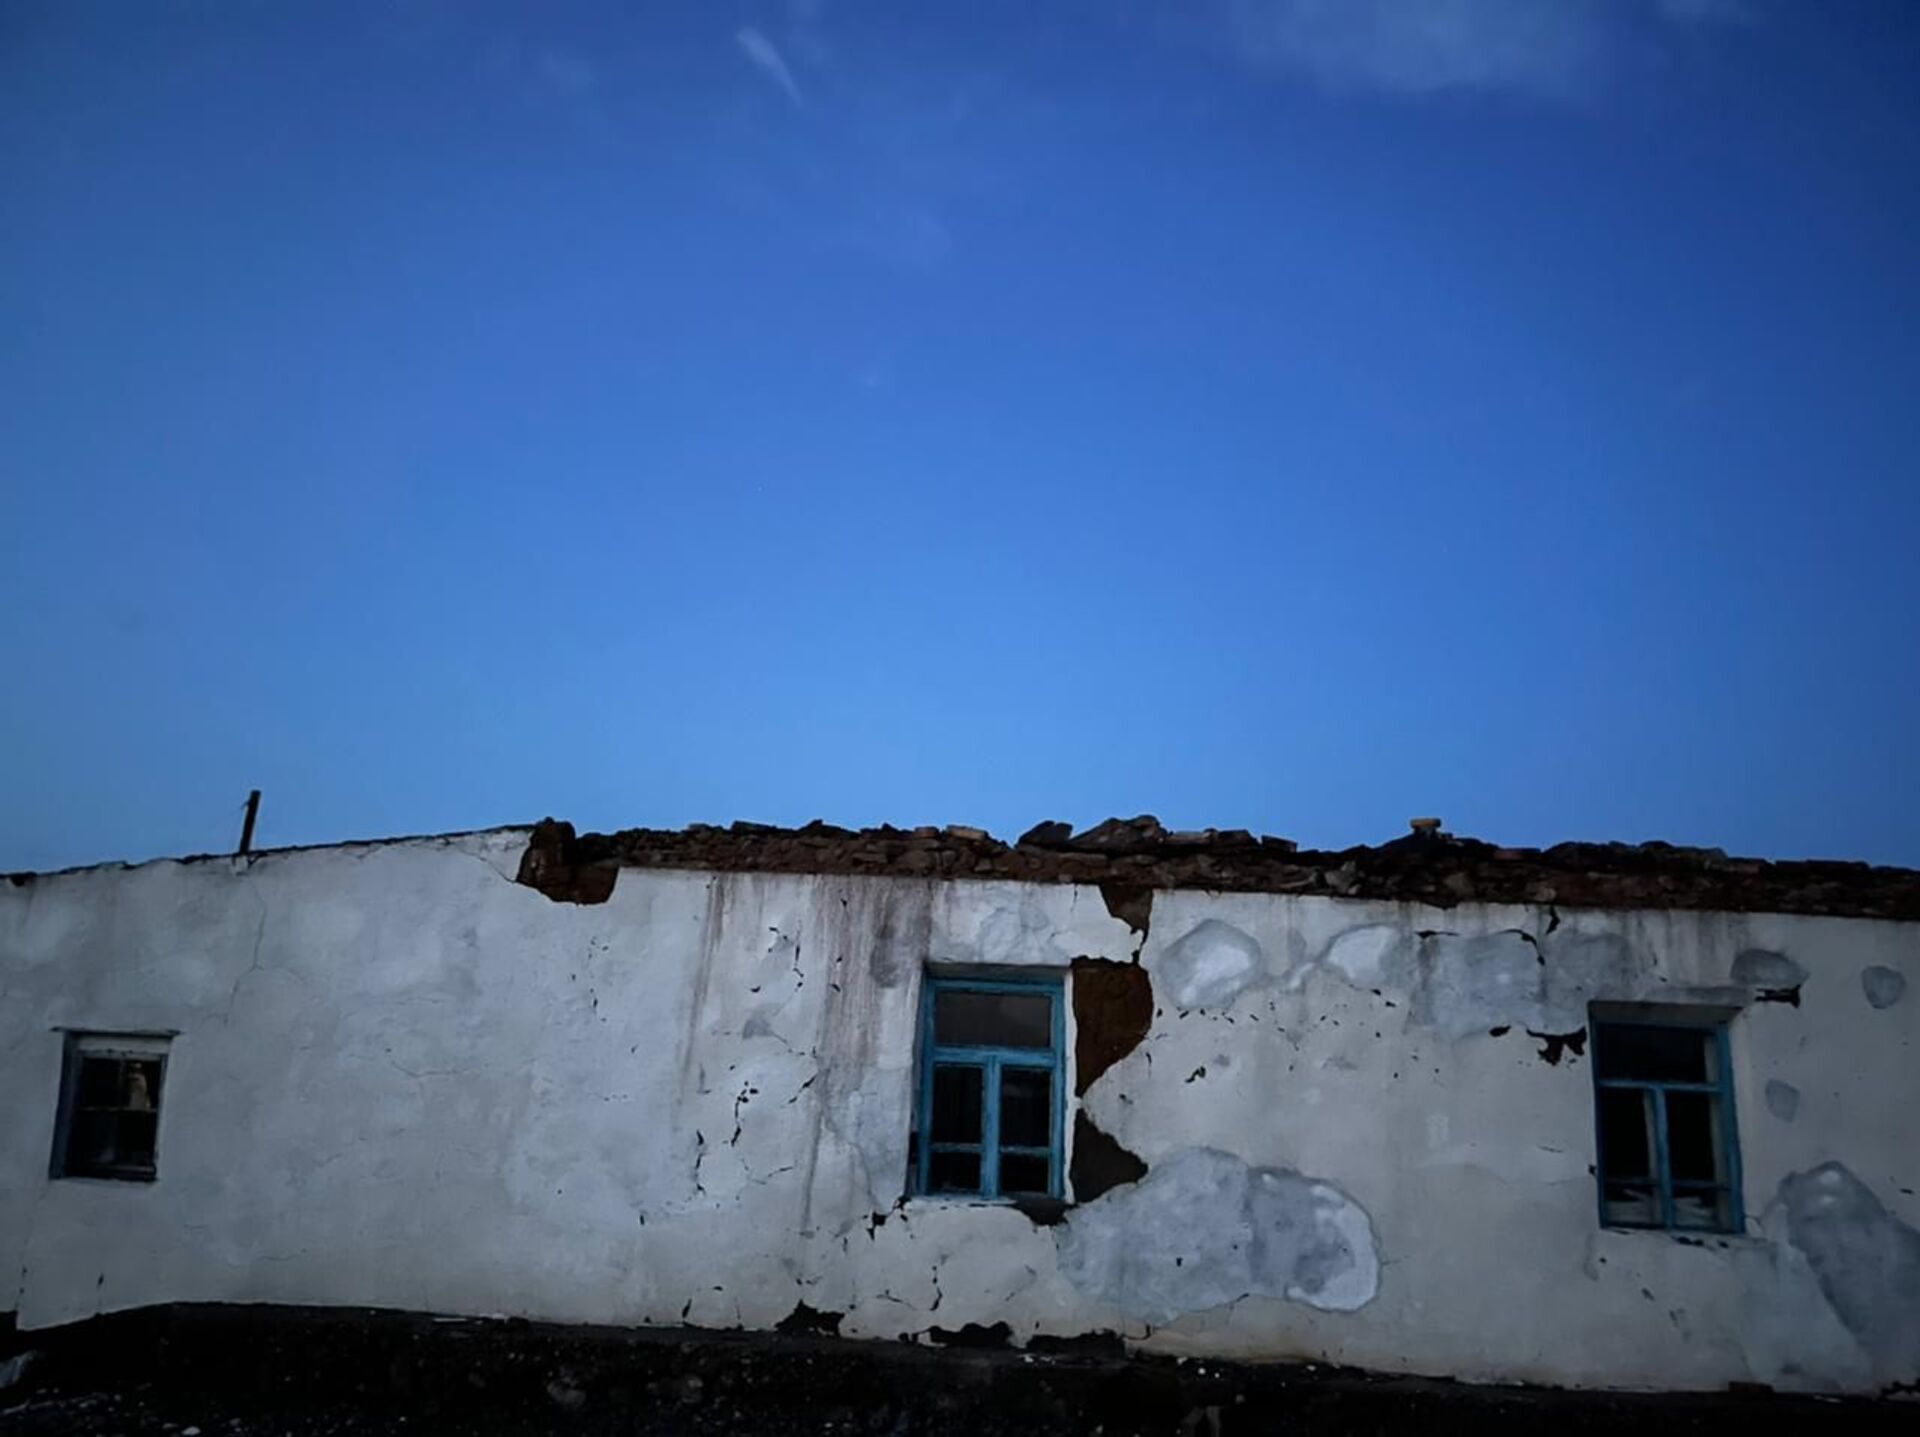 Ураган сорвал крыши домов и повредил автомобили в селах Акмолинской области - Sputnik Казахстан, 1920, 26.07.2021